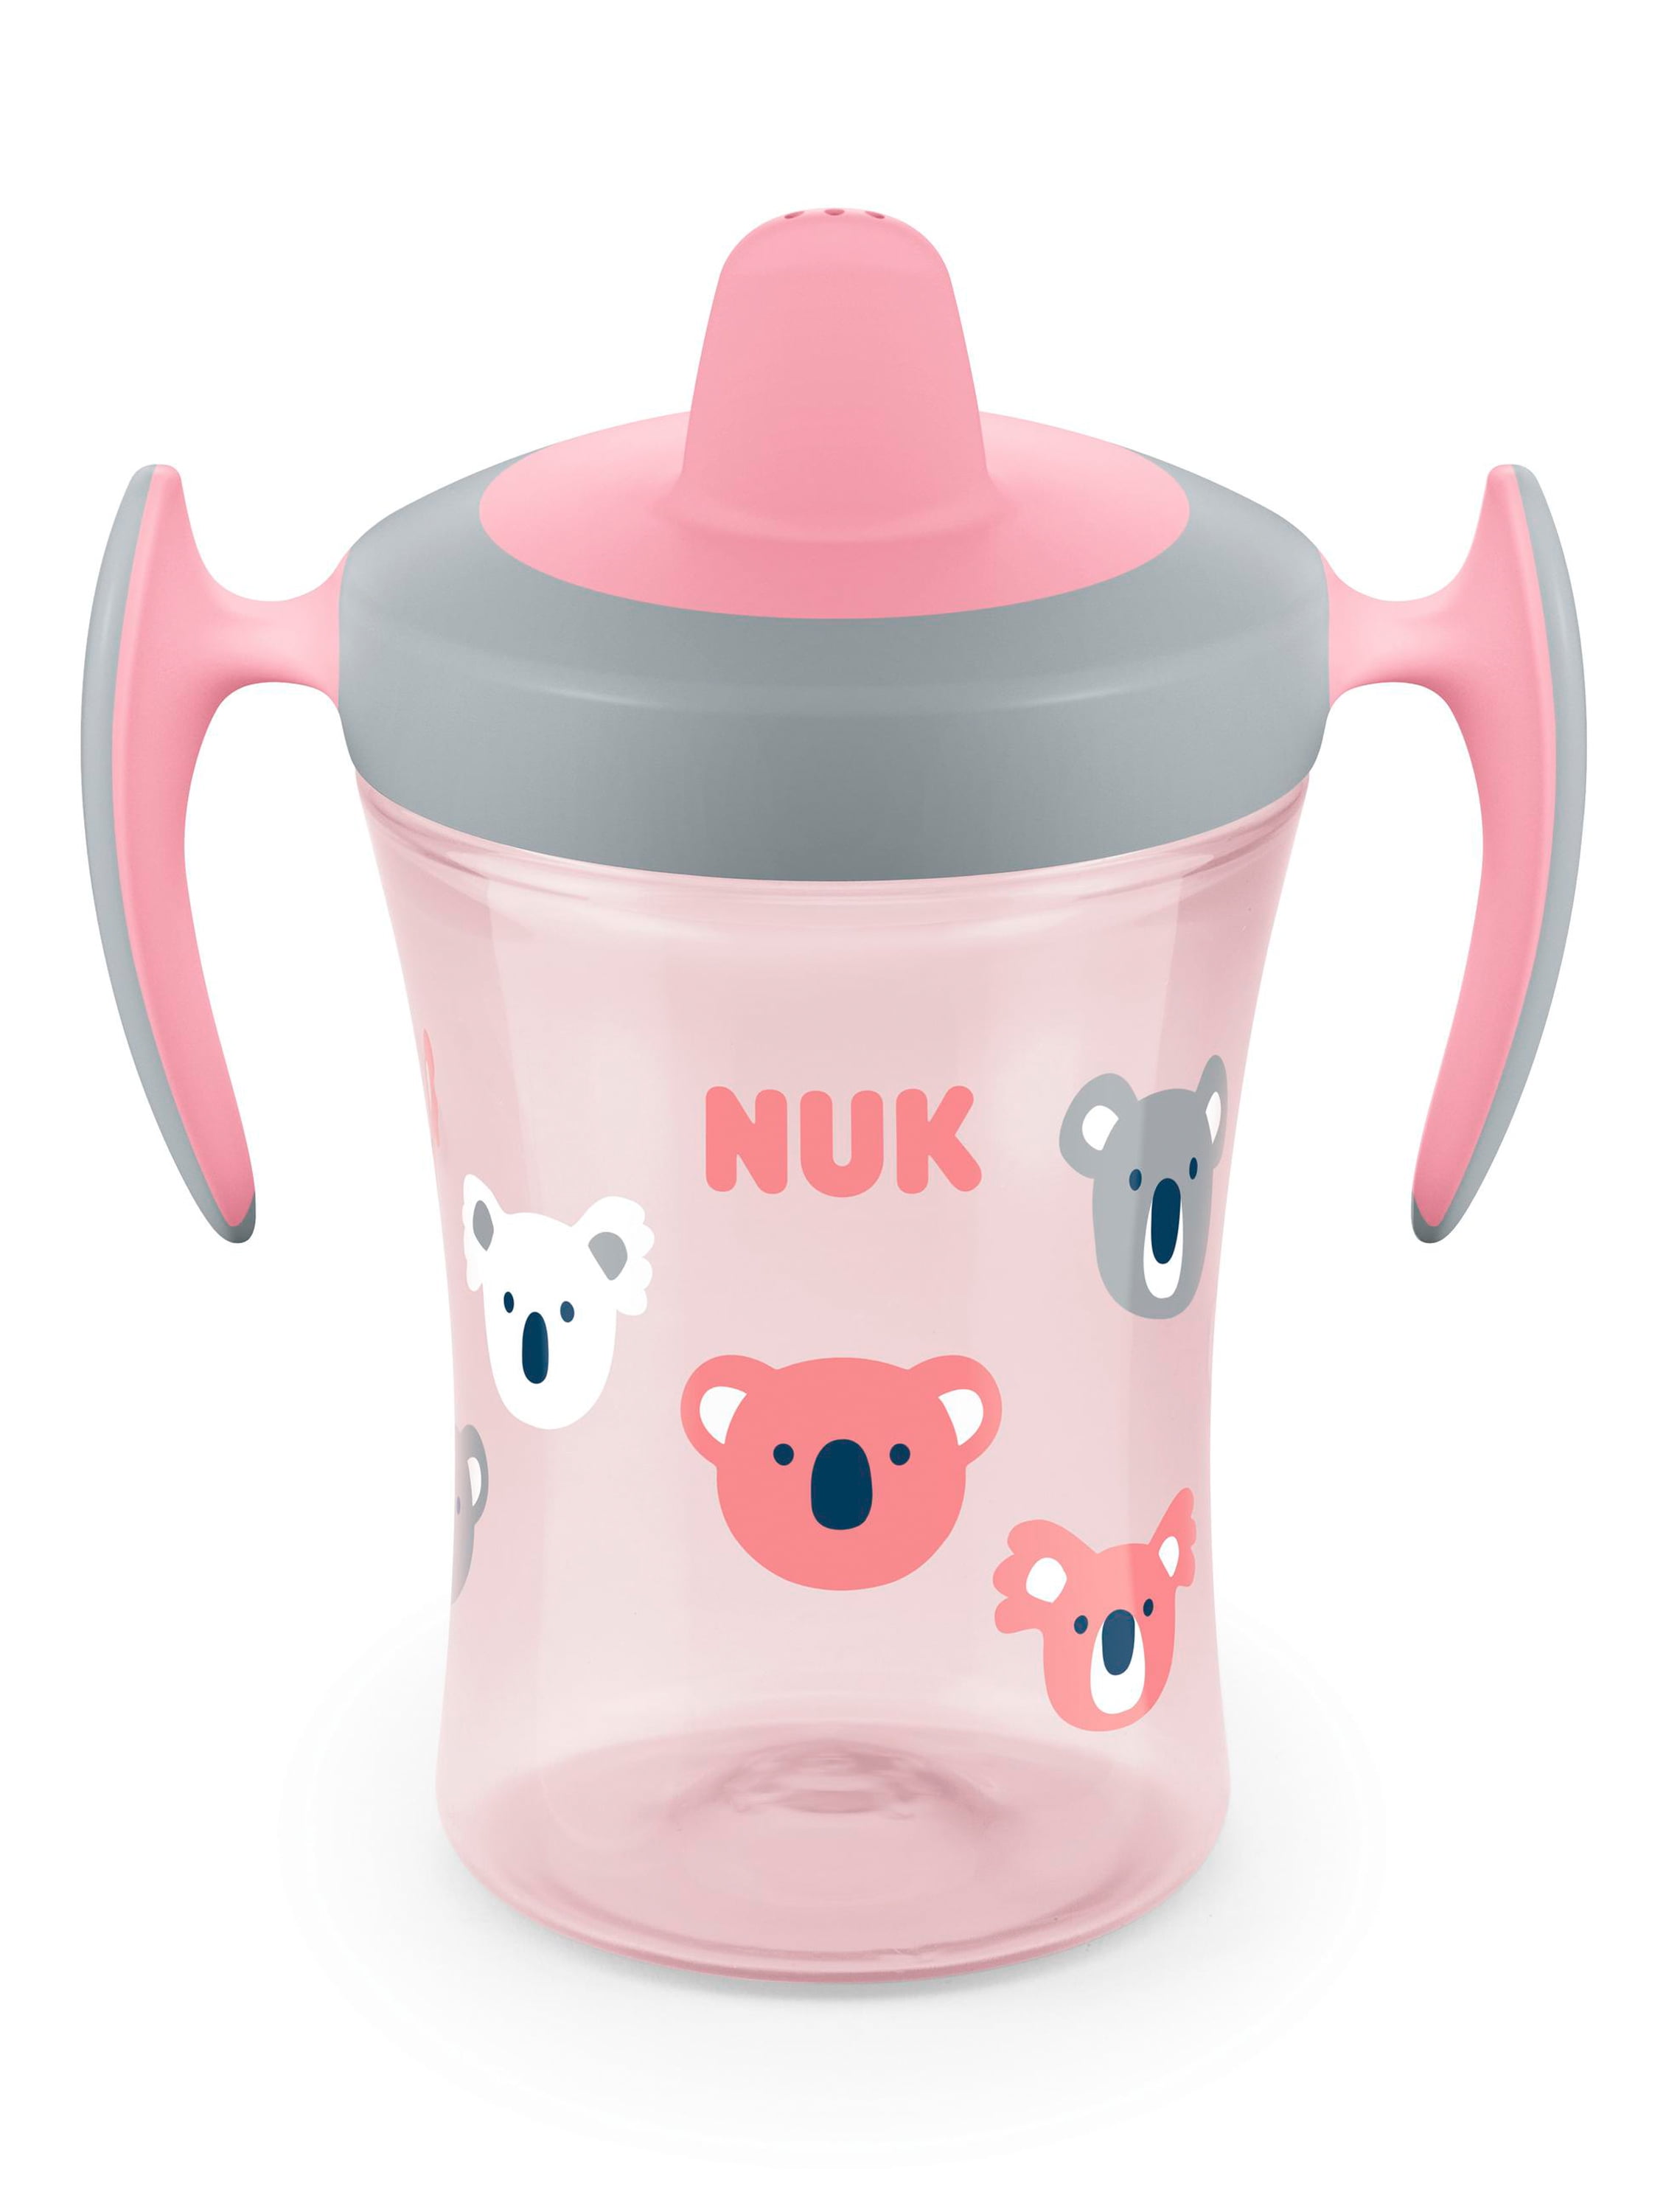 NUK Evolution Soft Spout Learner Cup, 8 